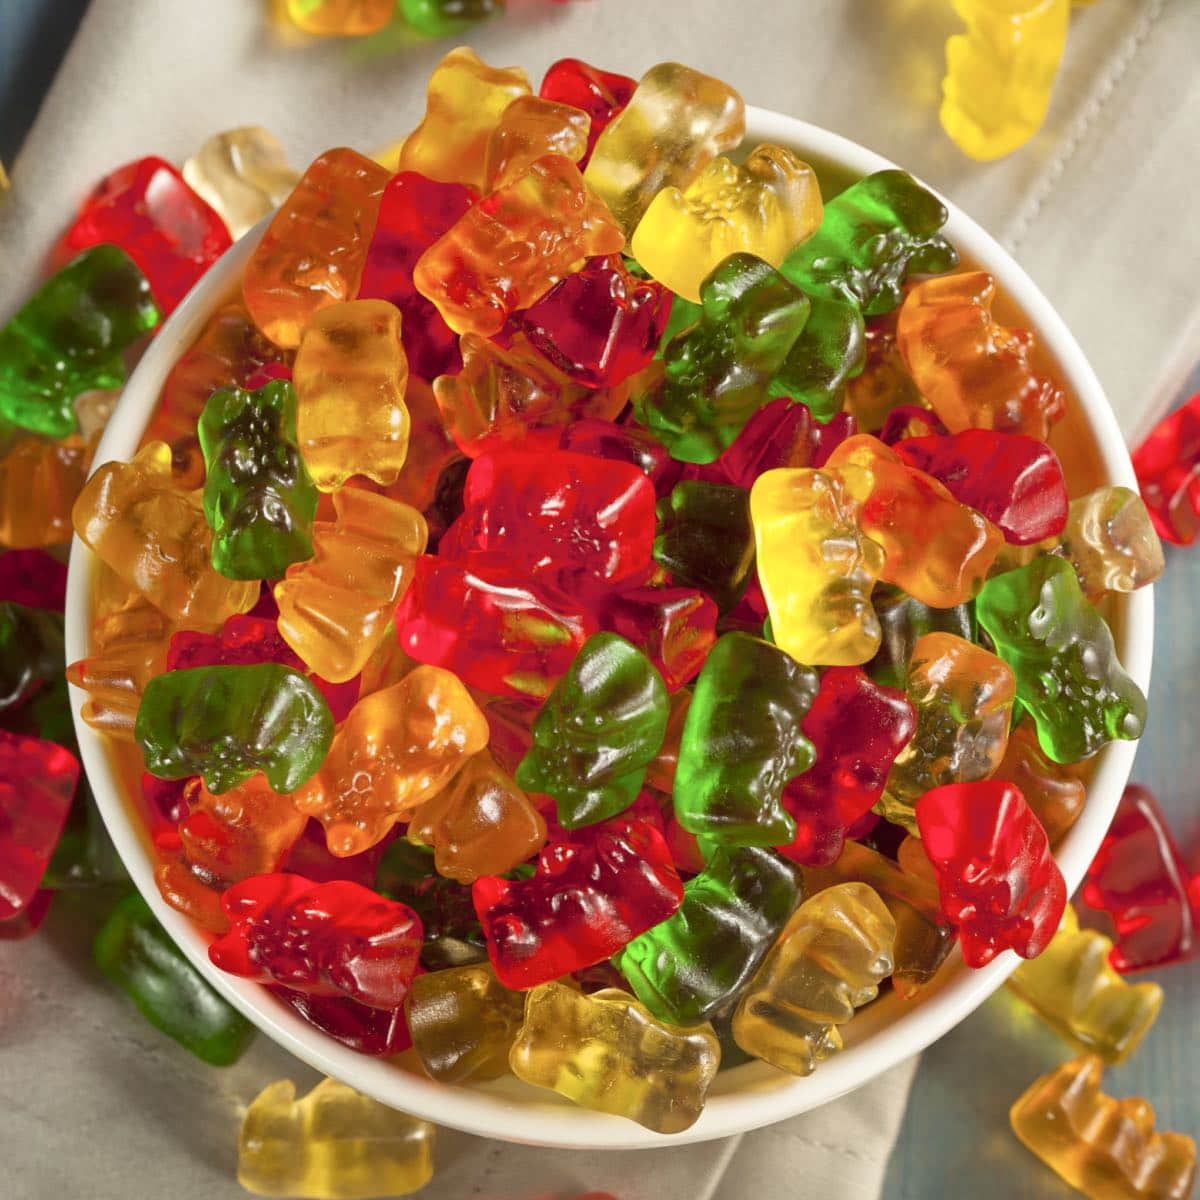 Sugar Free Gummy Bears (Keto, 3 Ingredients!) - Wholesome Yum